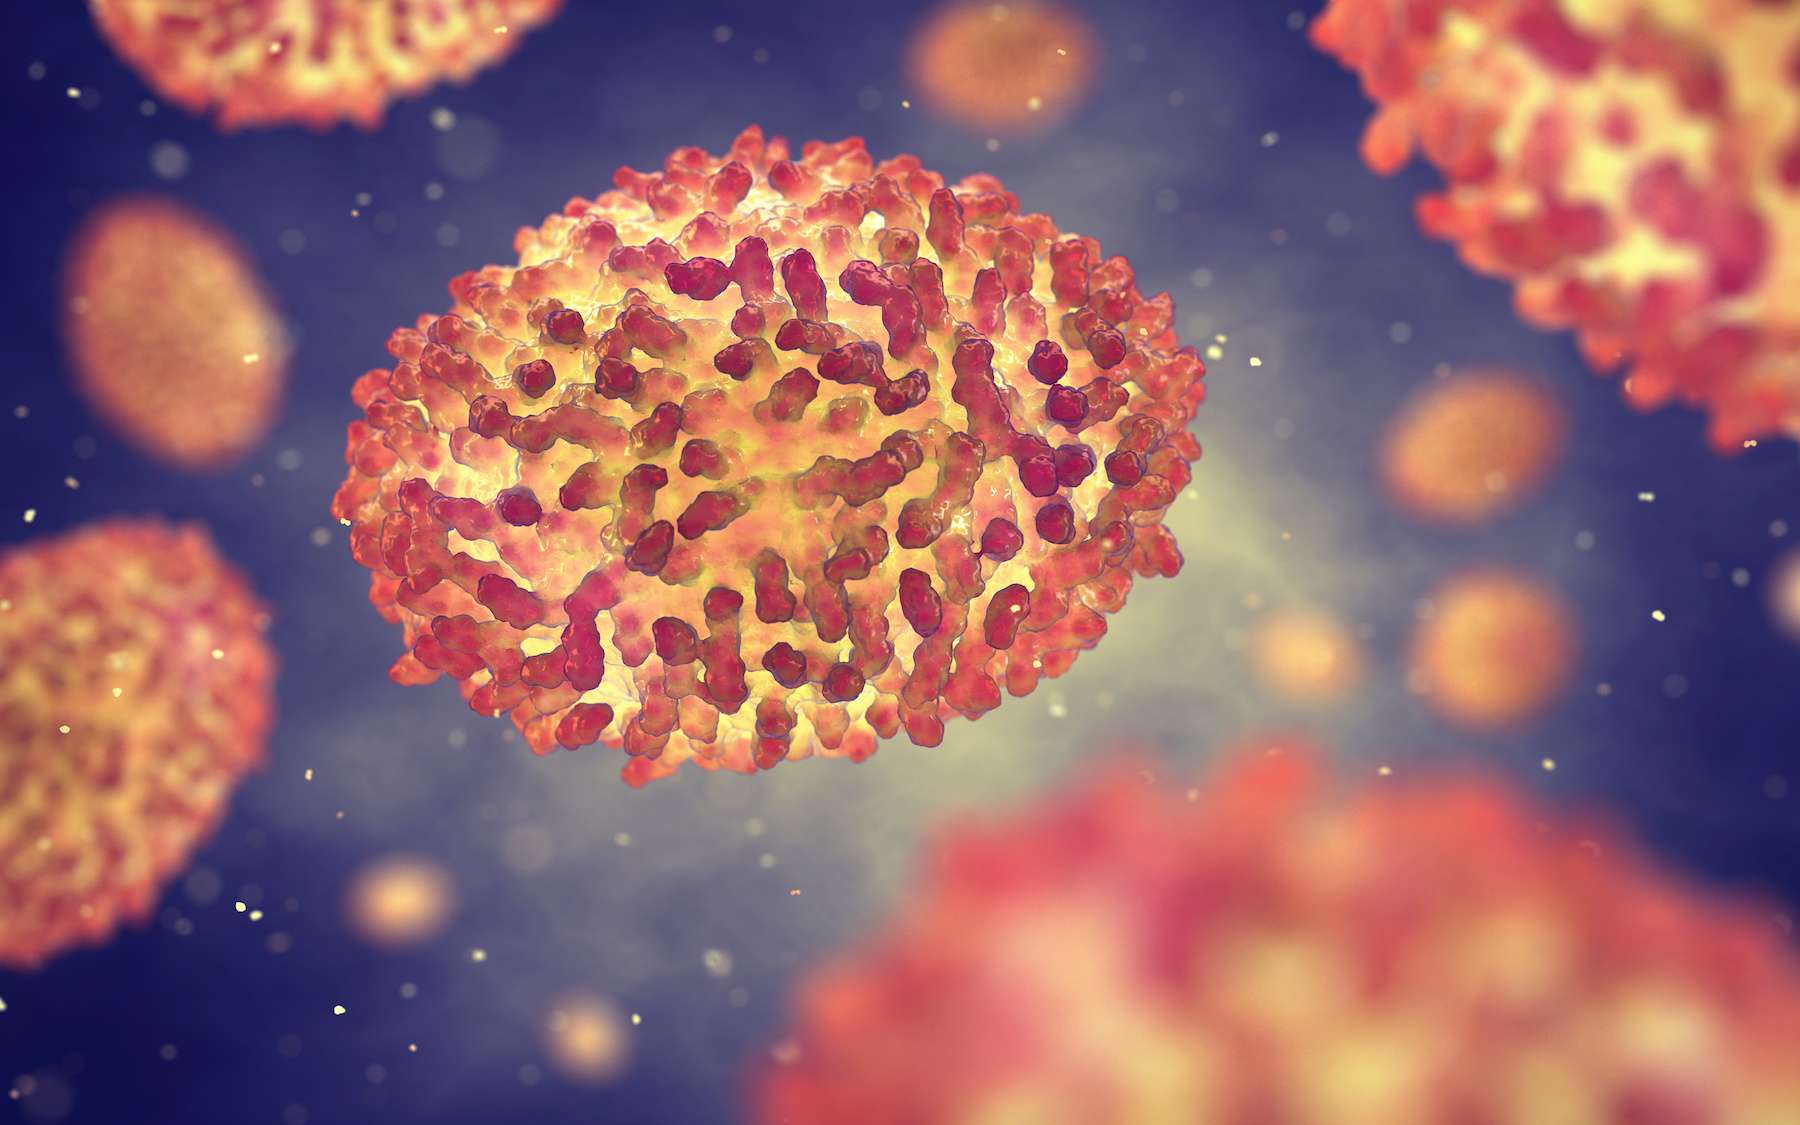 Le virus de la variole du singe appartient à la famille des Poxviridae. © nobeastsofierce, Adobe Stock